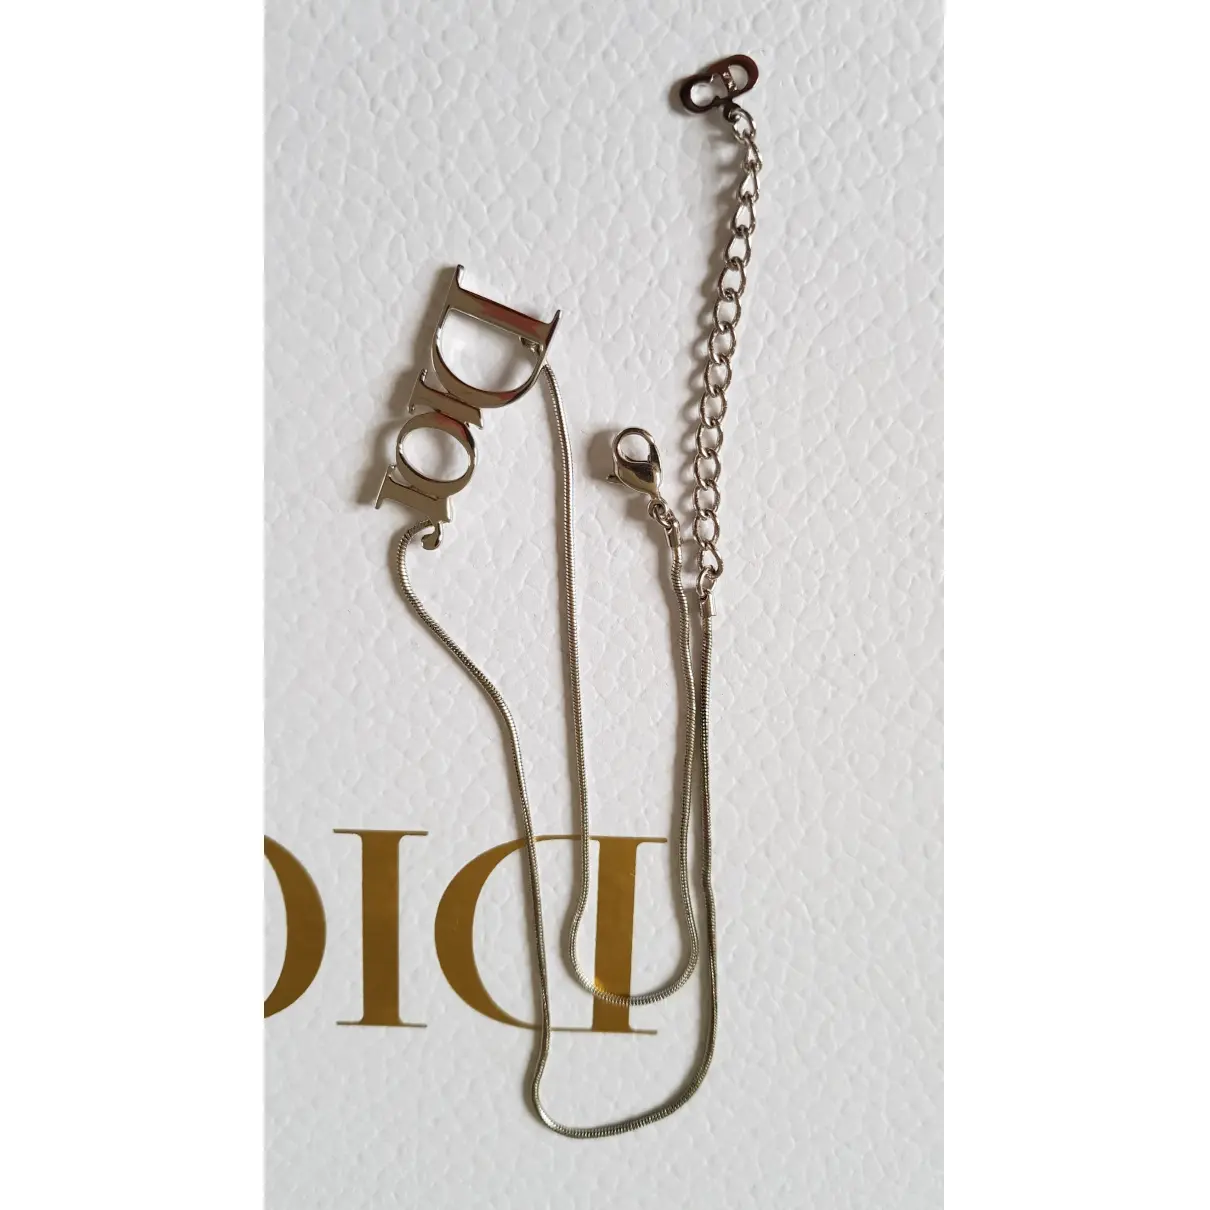 Dio(r)evolution necklace Dior